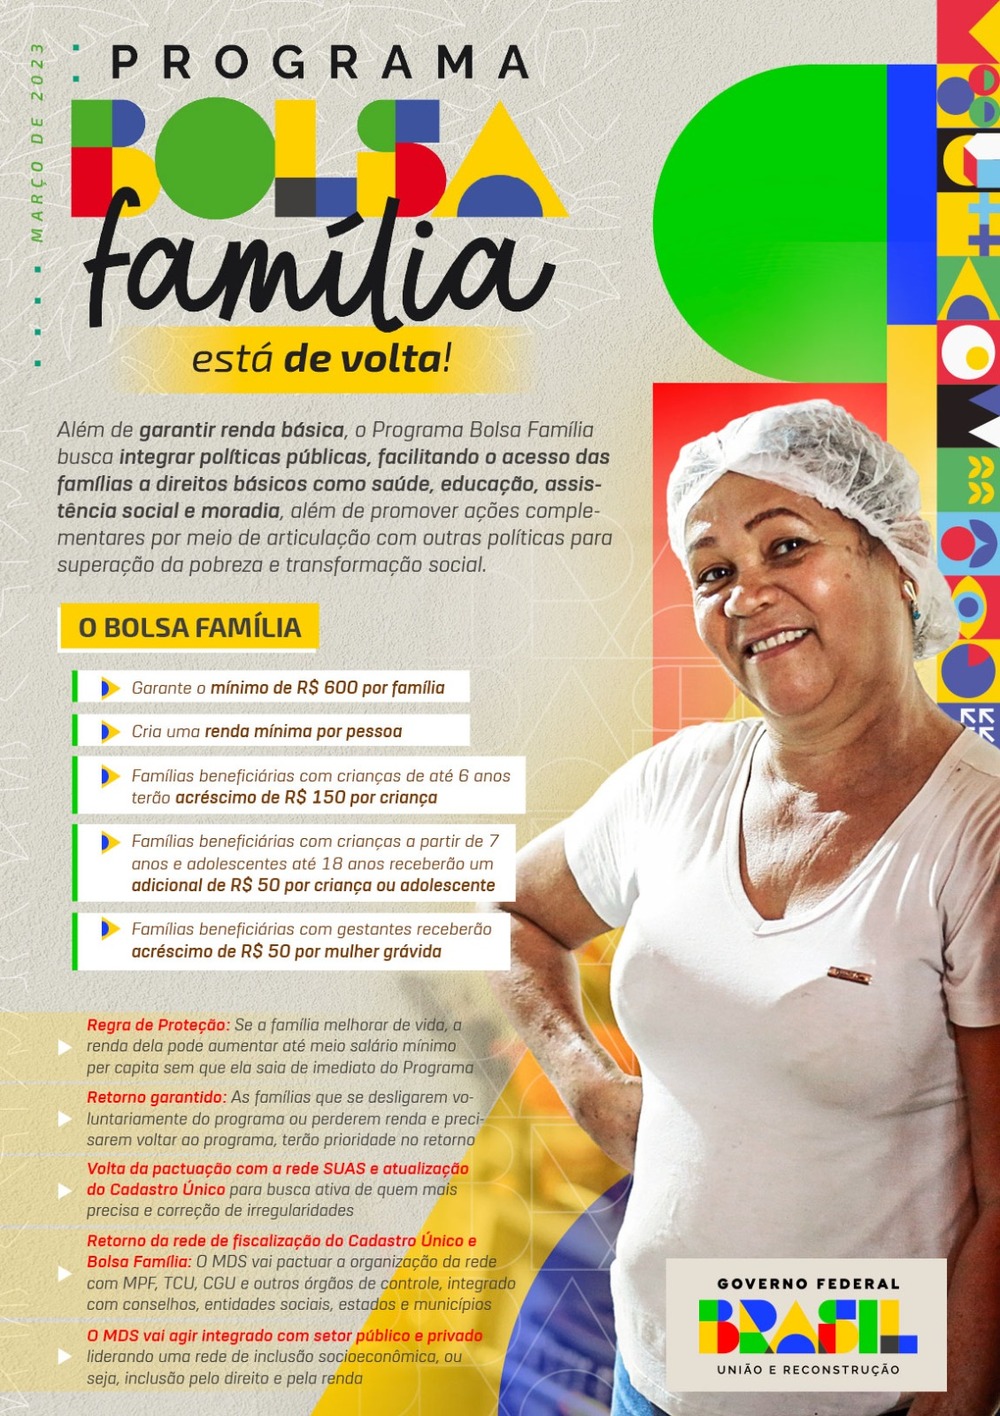 Bolsa Família: Veja as principais mudanças nas regras de participação do programa. 